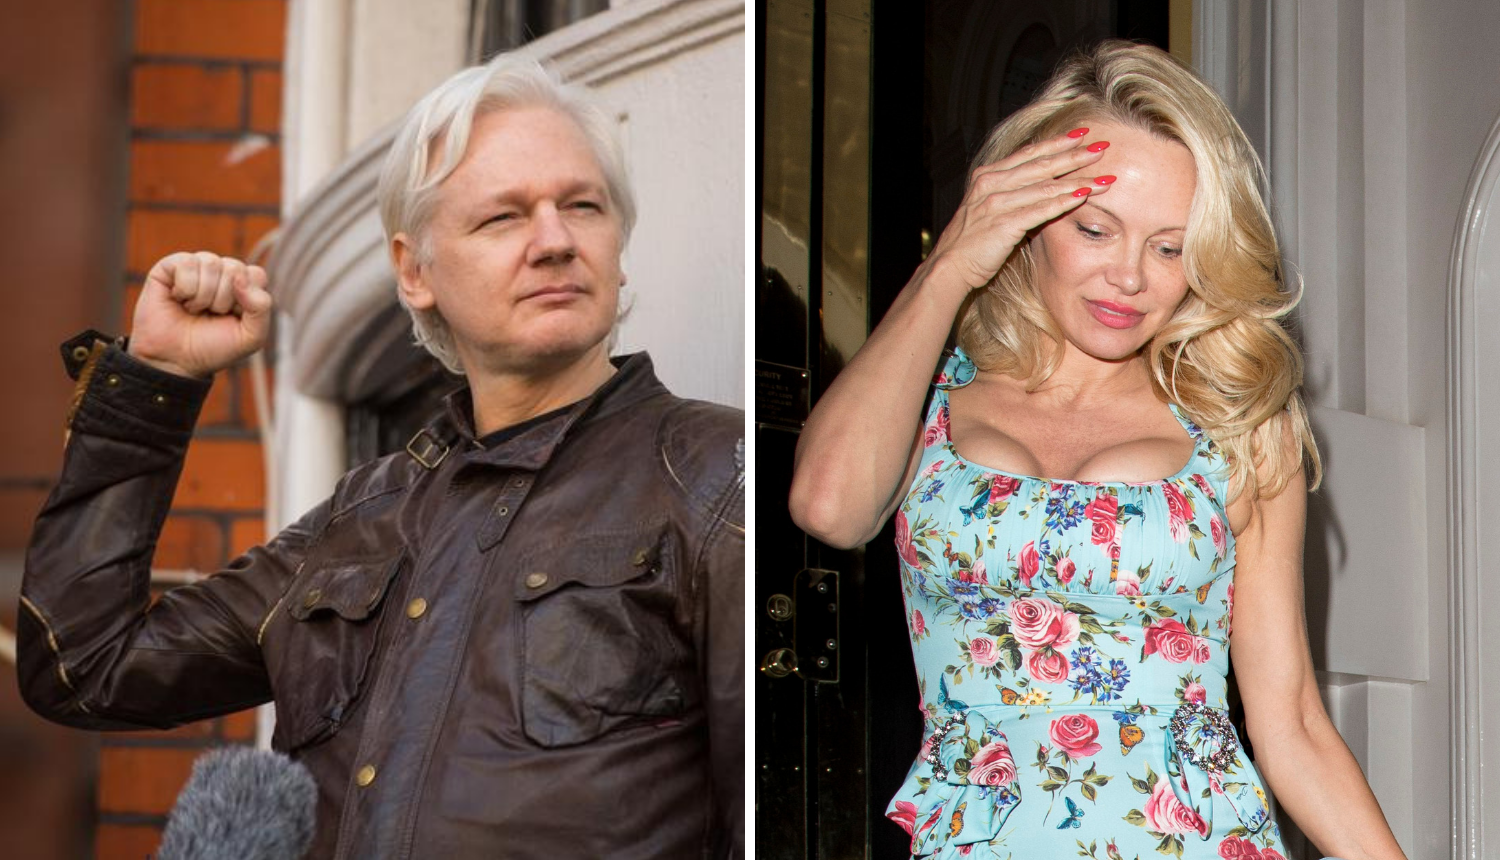 Ucijenili ga intimnom snimkom: Pamela posjećivala Assangea...